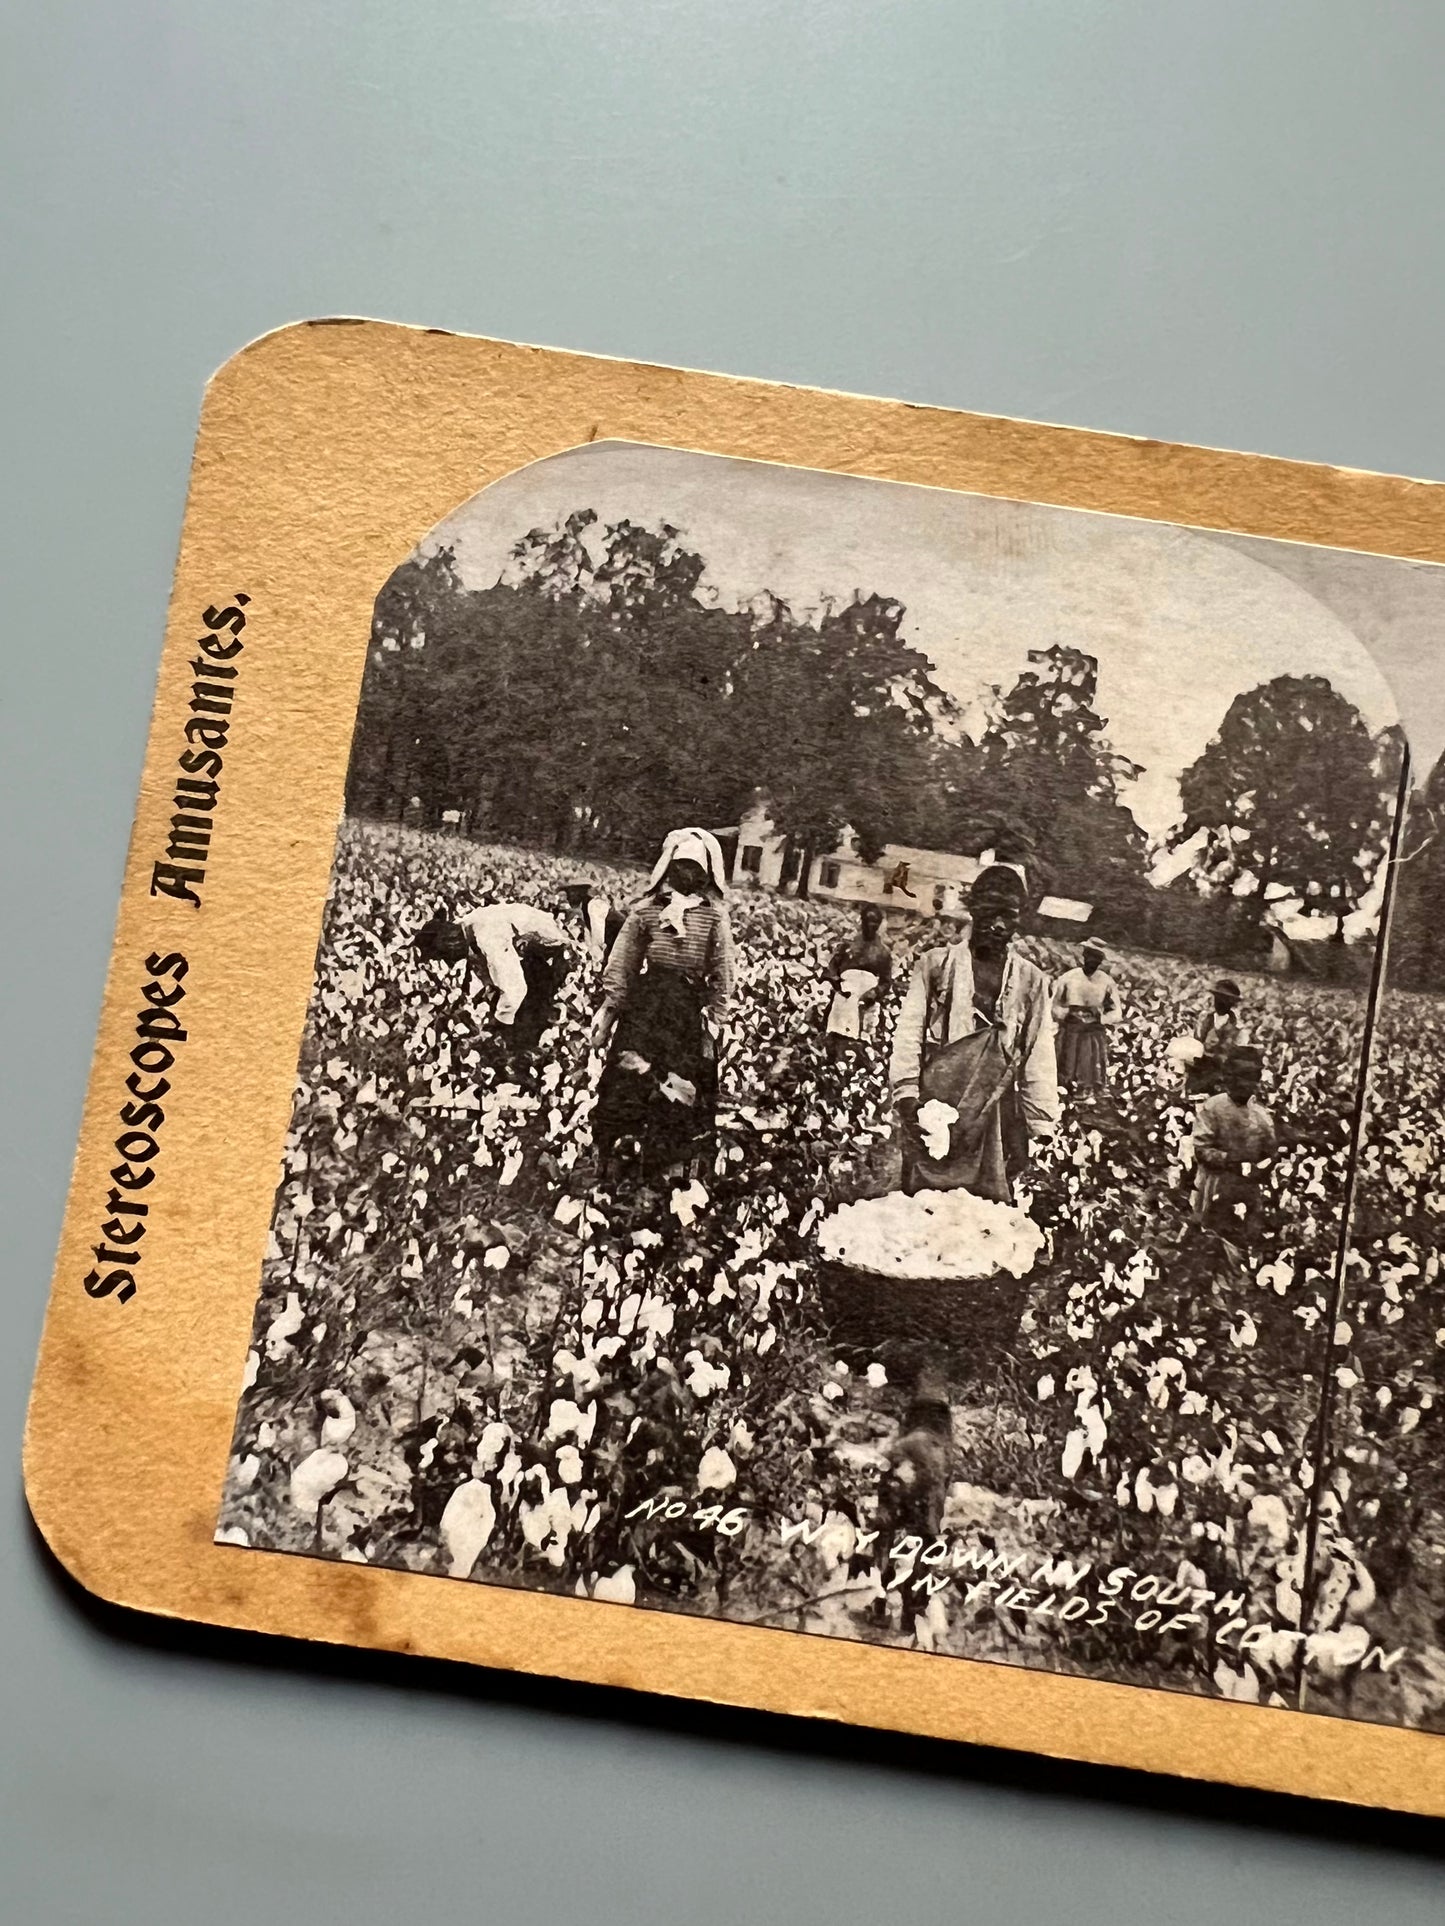 Campo de algodón del sur de los Estados Unidos, fotografía estereoscópica - Estereoscopes amusantes, ca. 1900